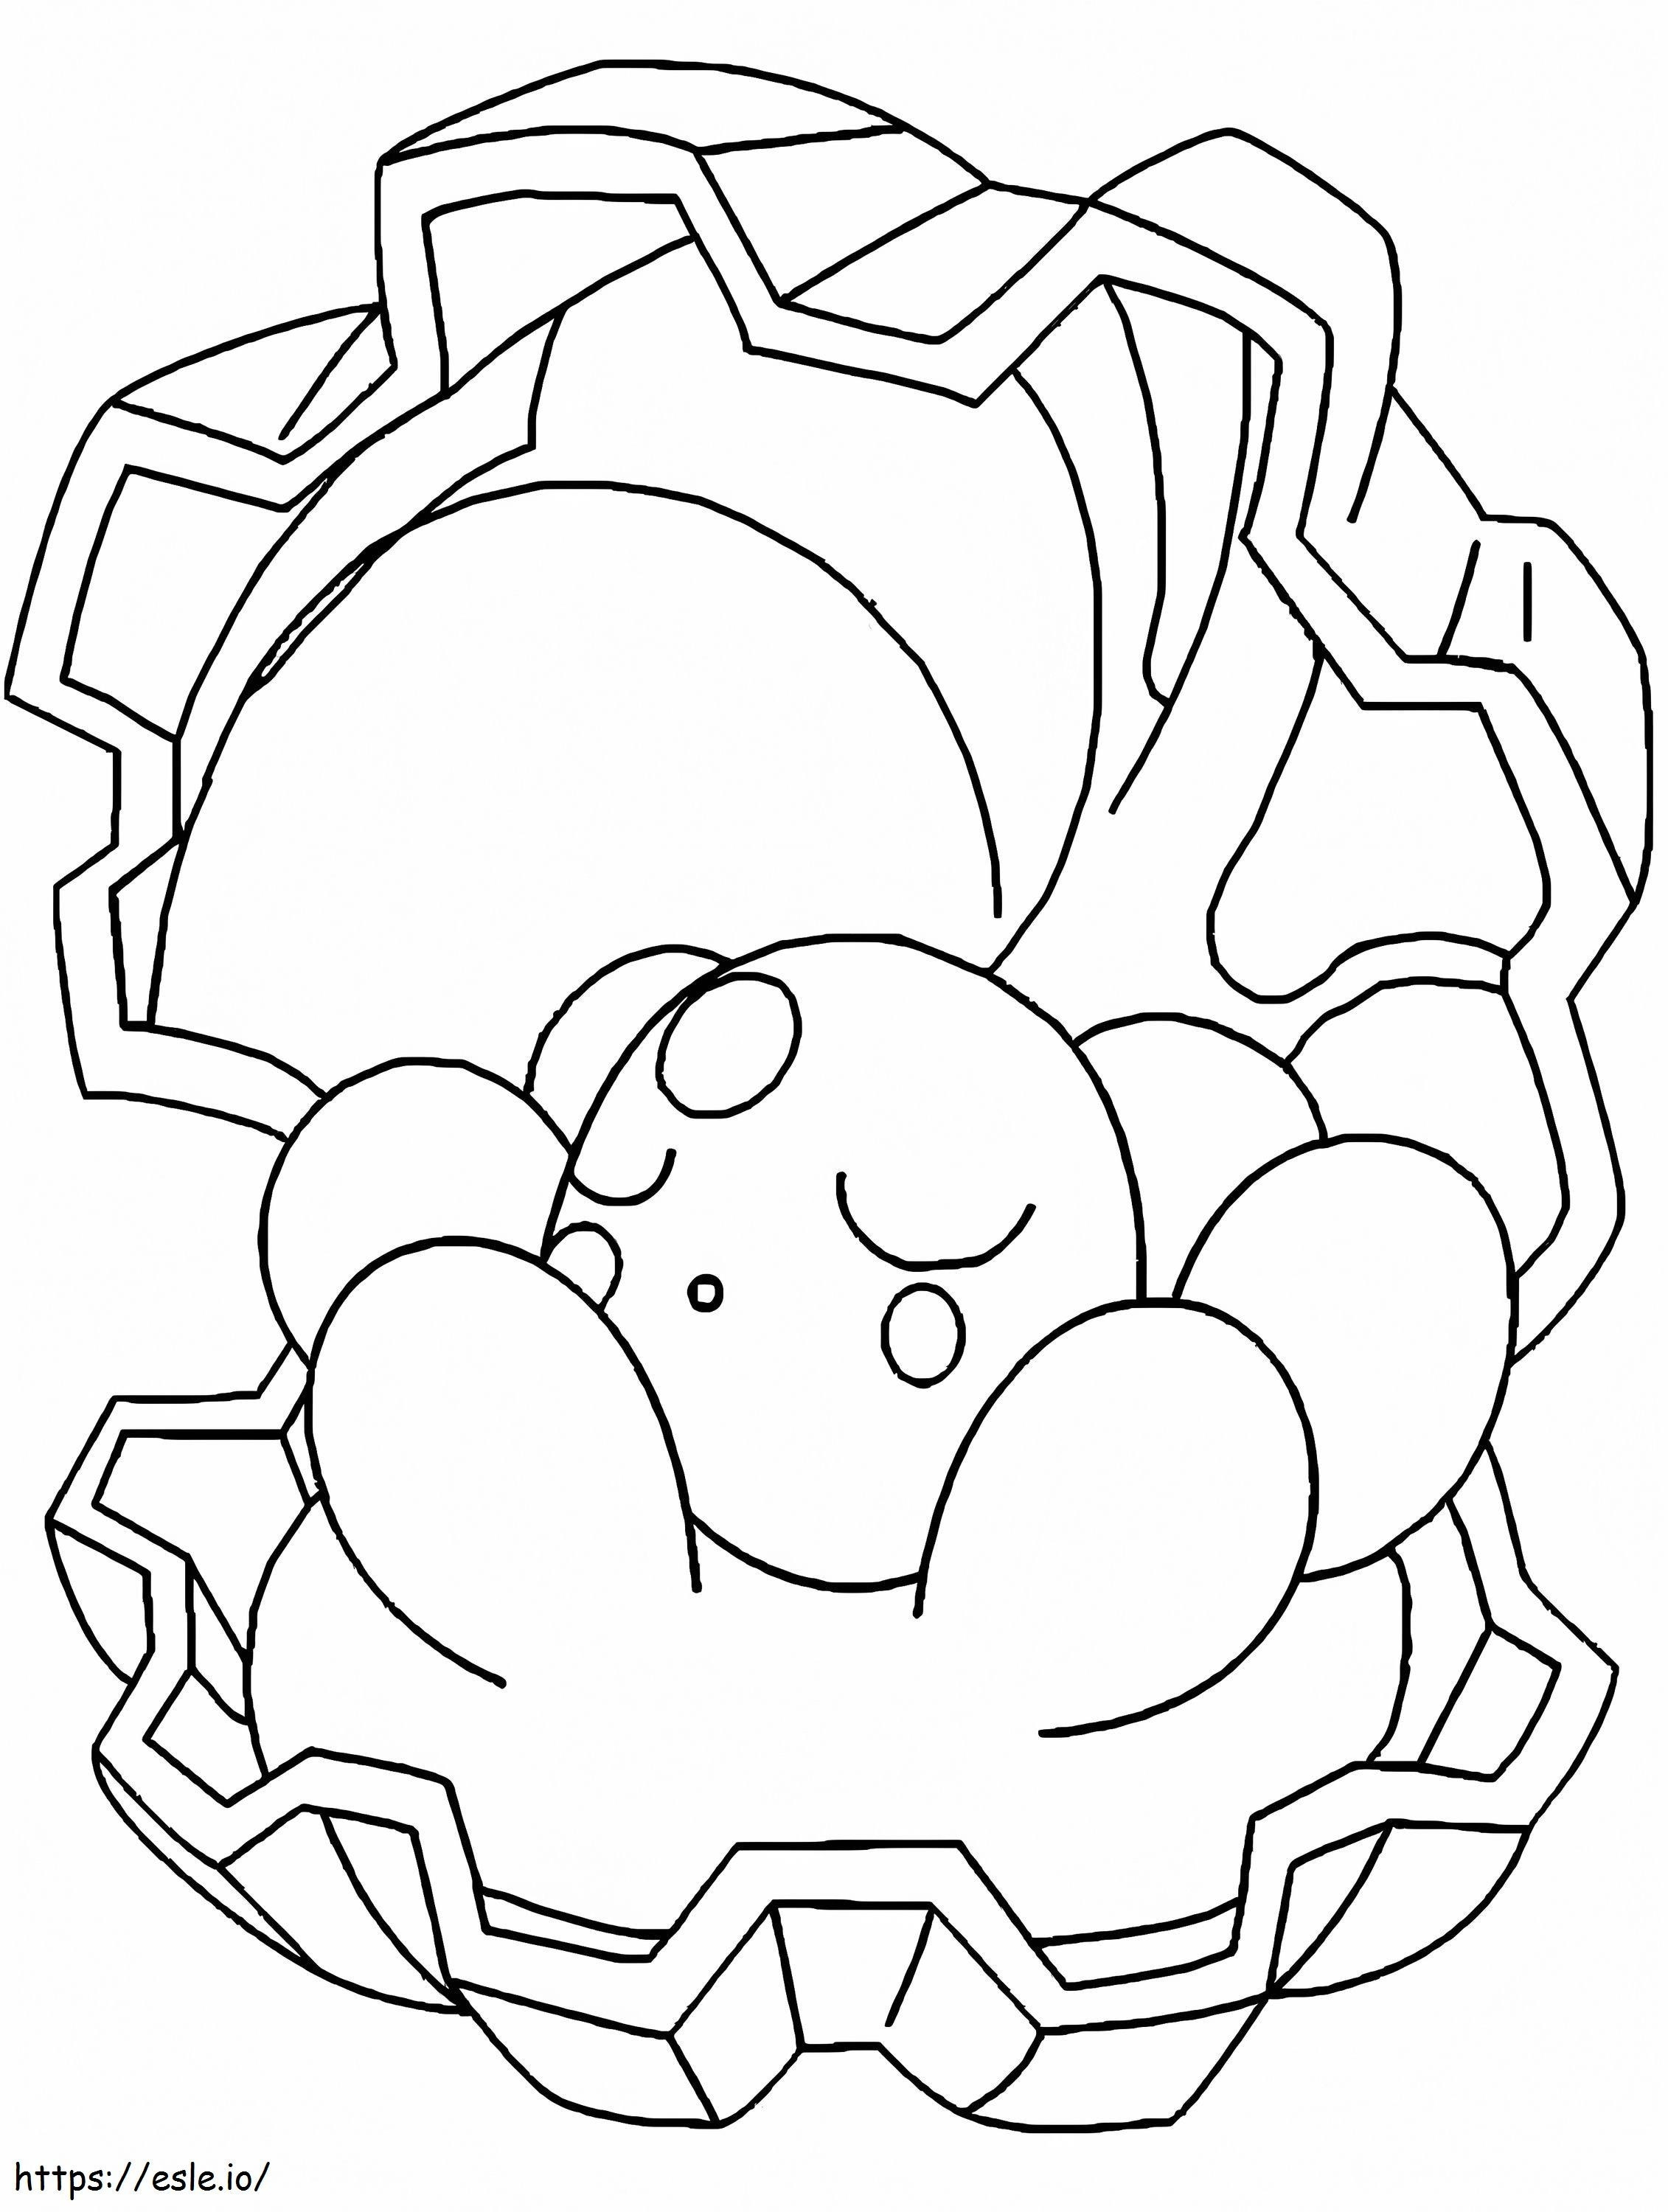 Coloriage Pokémon Clamperl Gen 3 à imprimer dessin